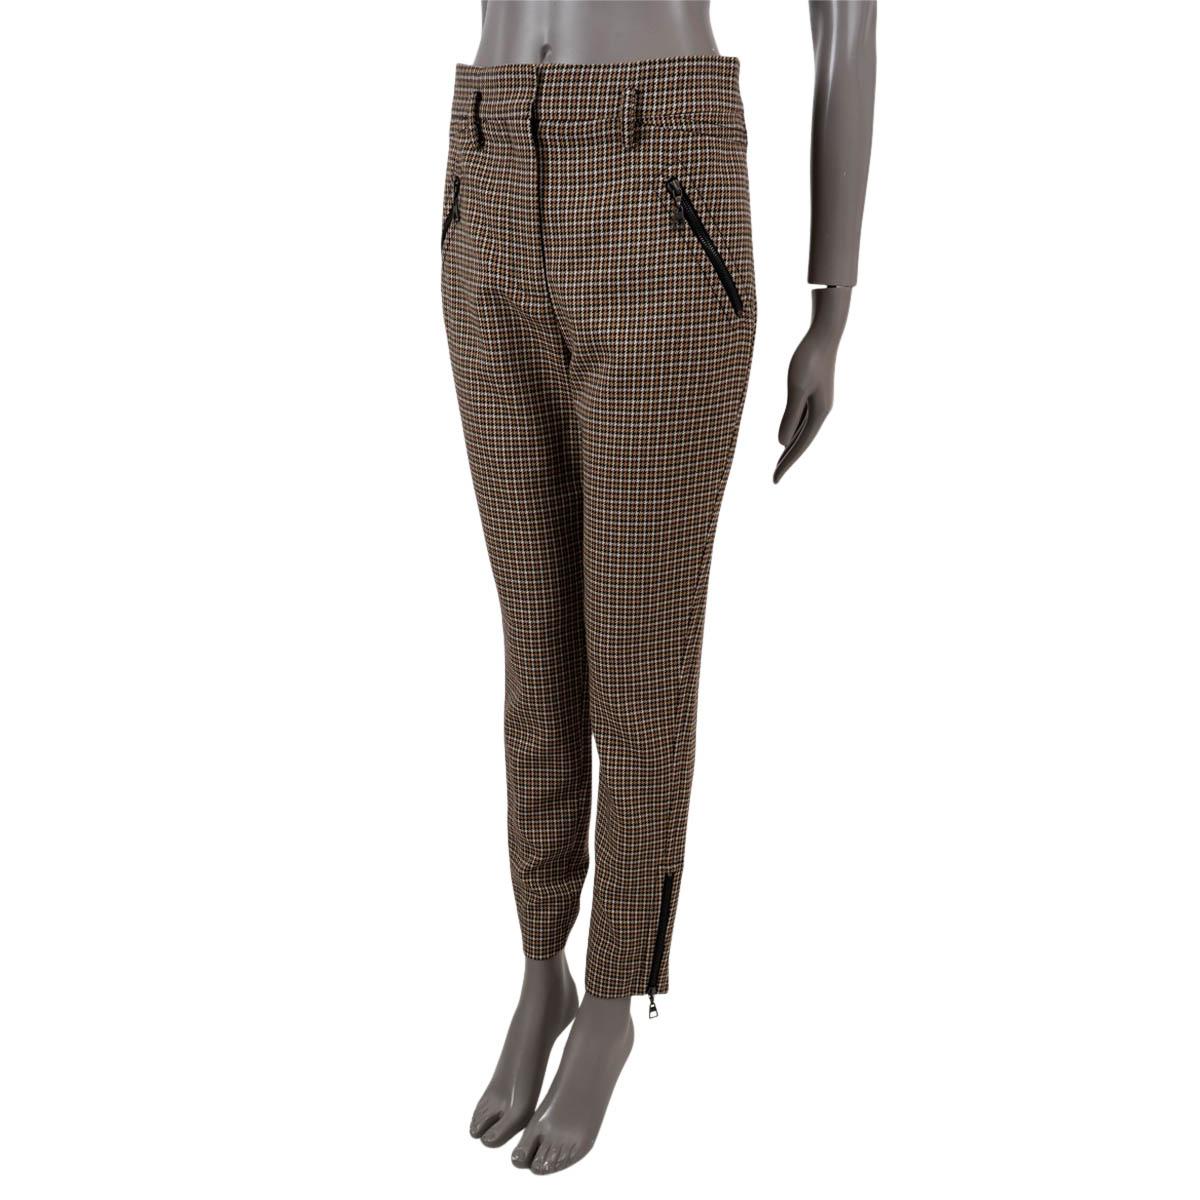 Pantalon pied-de-poule Louis Vuitton 100% authentique en laine beige, crème, noire et marron chocolat (100%). Il présente une jambe fuselée avec des fermetures à glissière aux poignets, deux poches zippées sur le devant et des passants de ceinture.